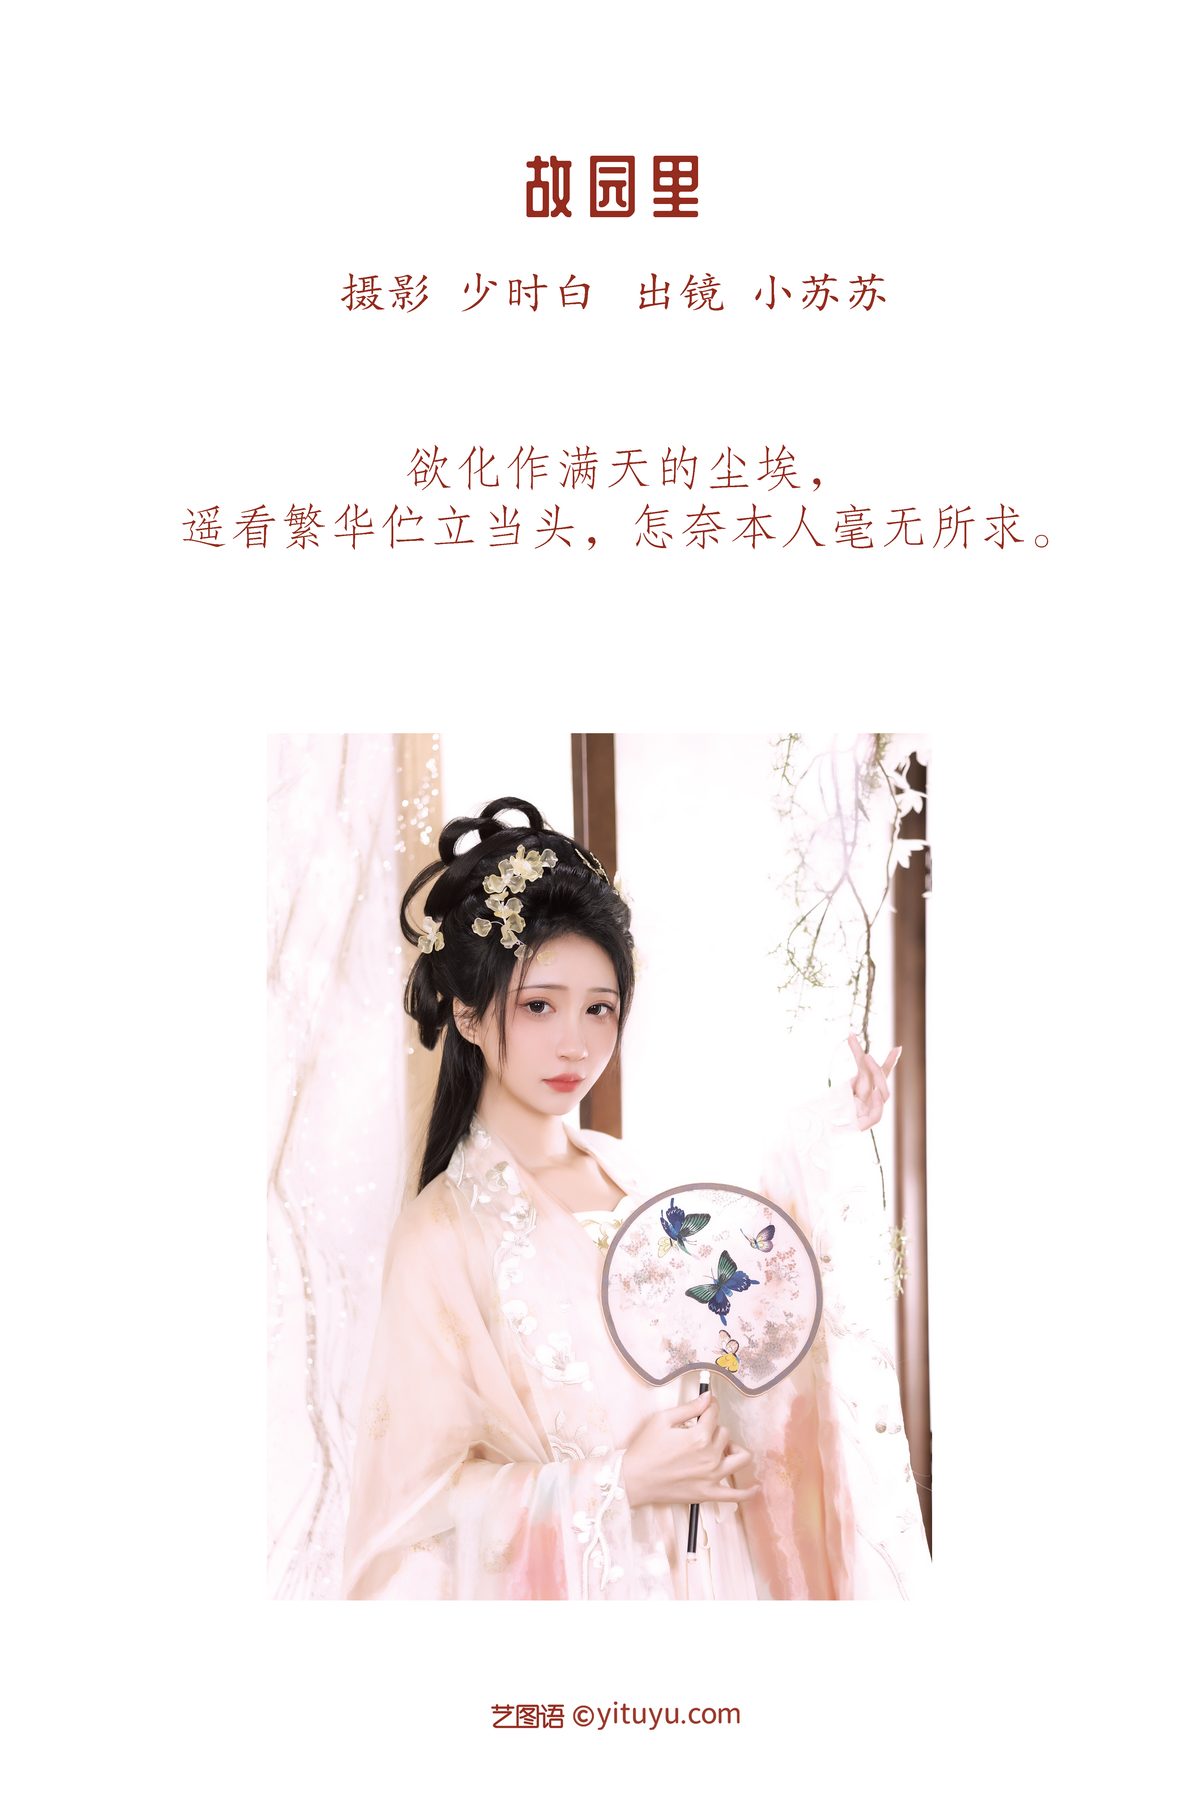 YiTuYu艺图语 Vol 3434 Qi Luo Sheng De Xiao Su Su 0001 5439076415.jpg